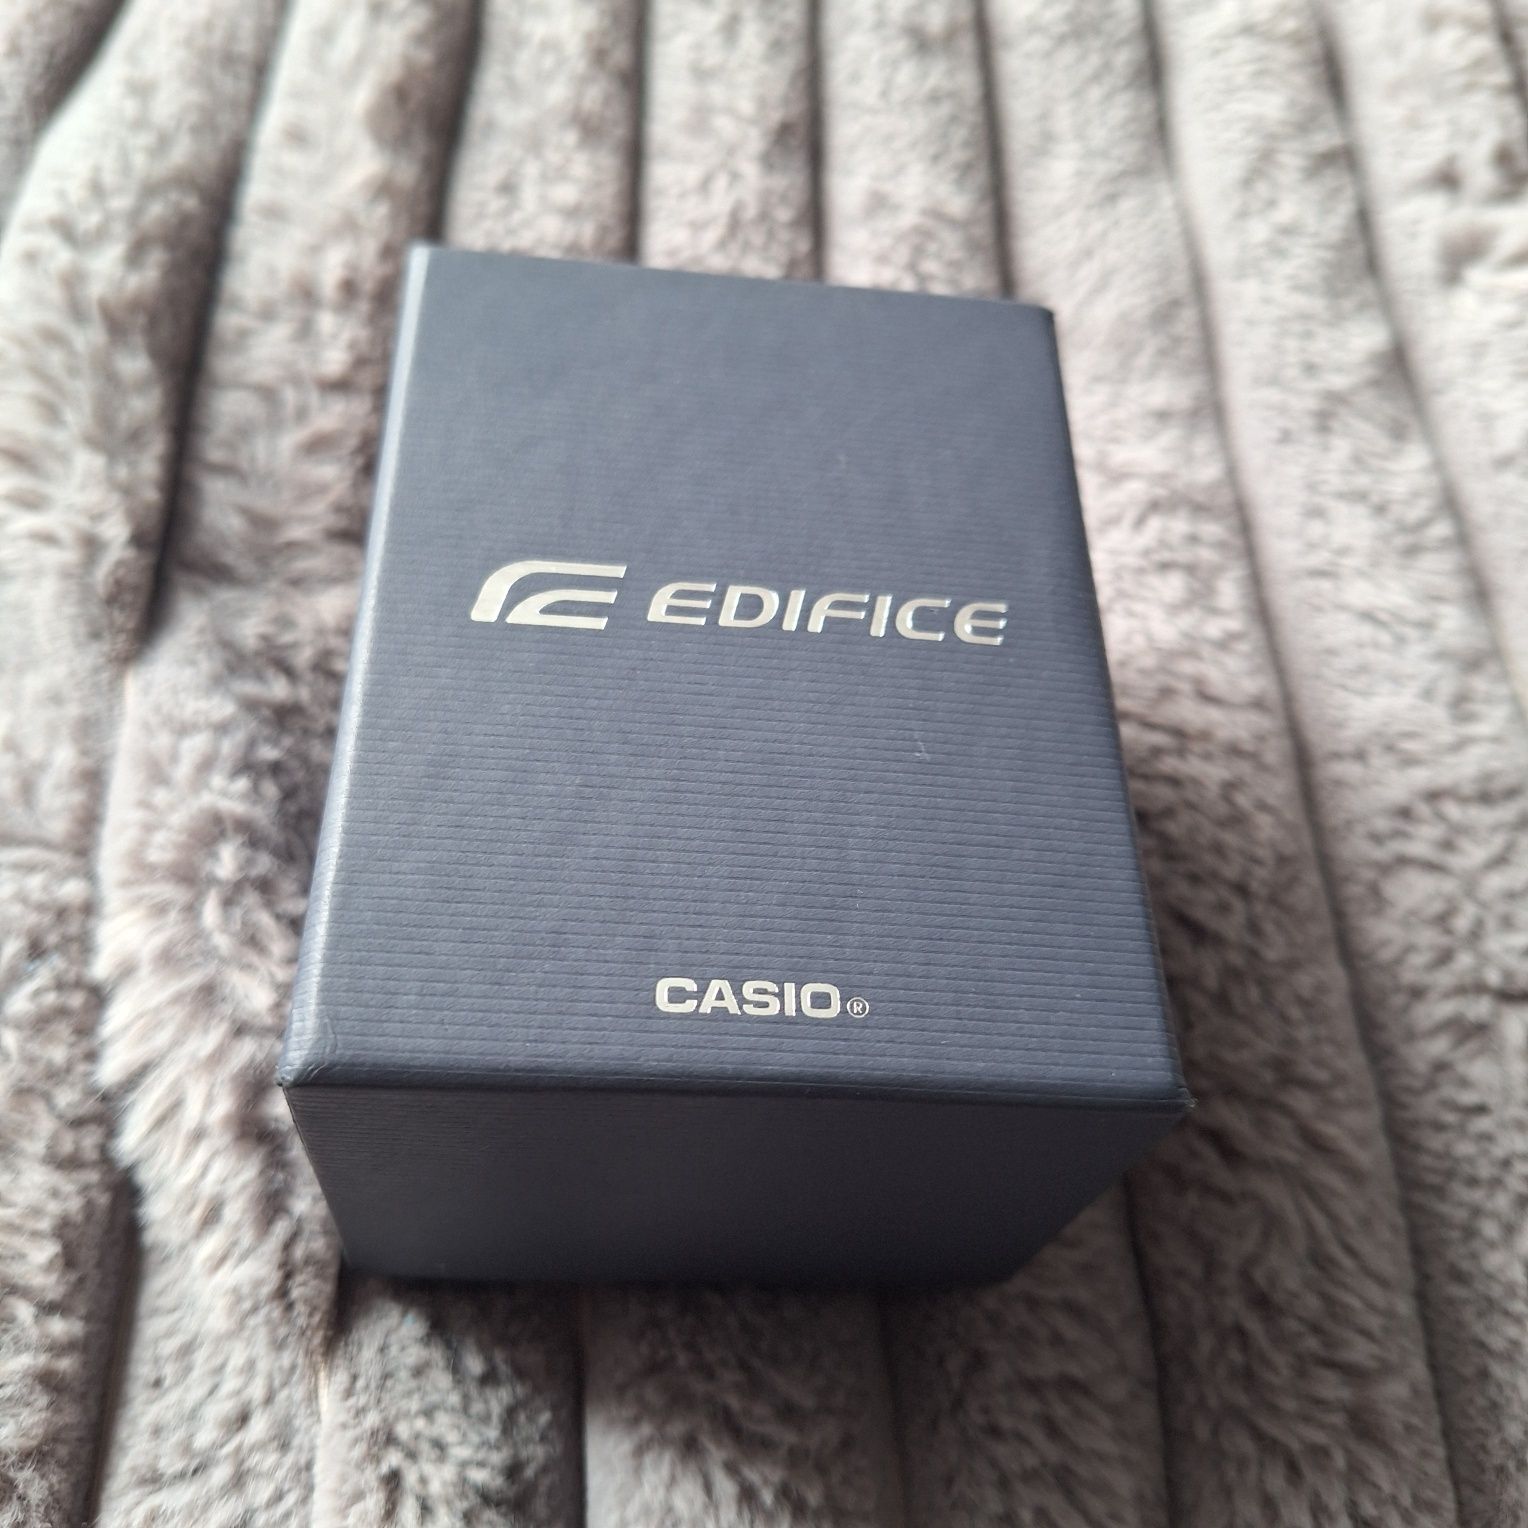 Casio edifice EFR-570d